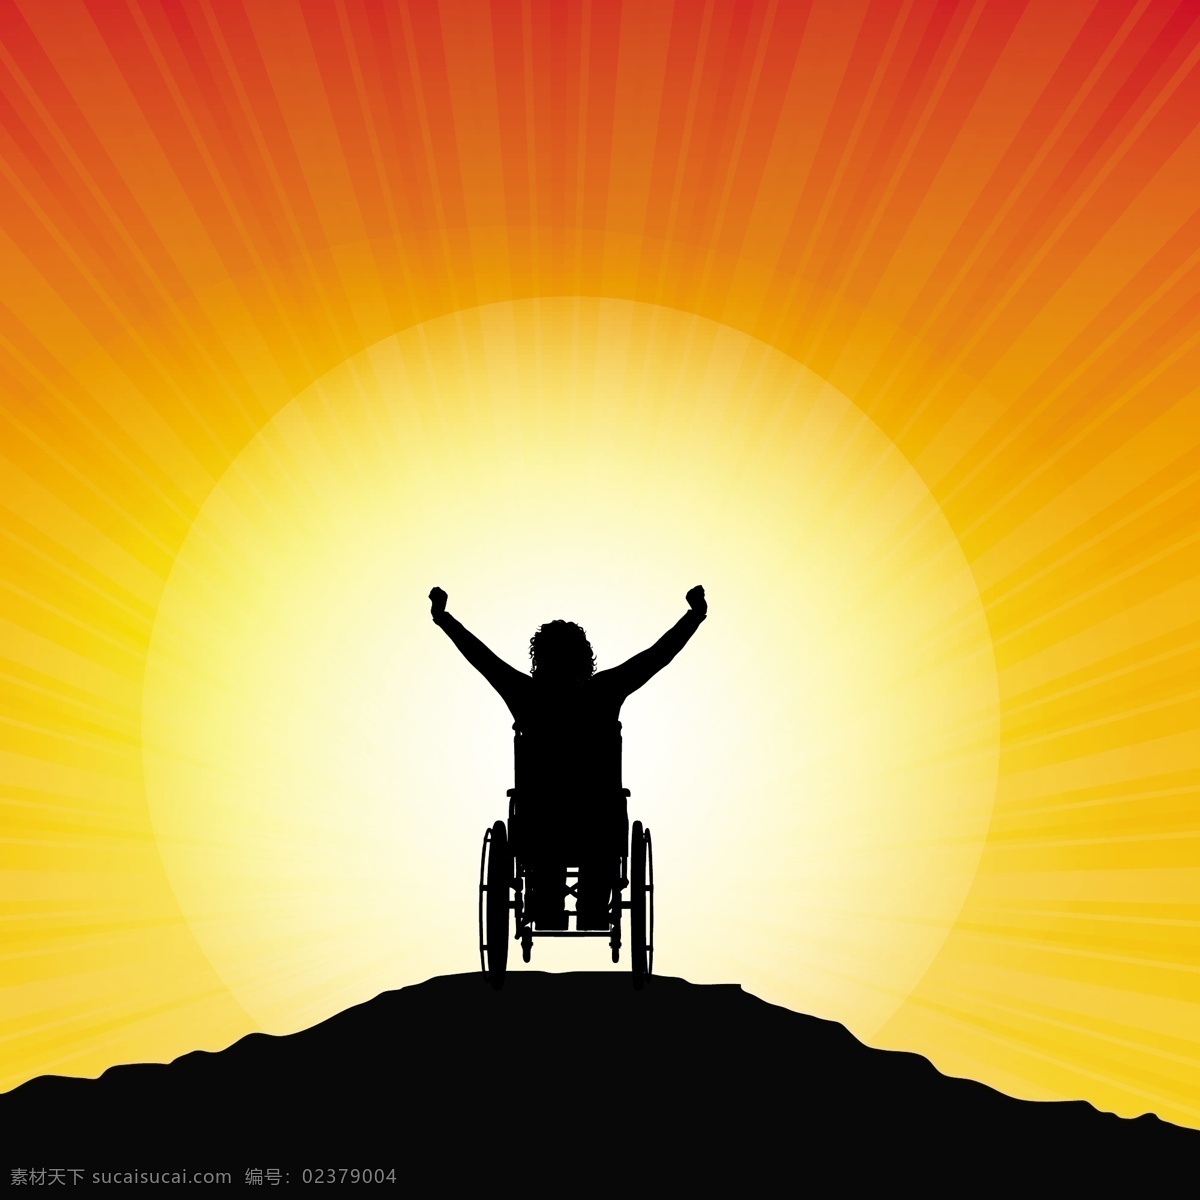 日落 人 上面 背景 抽象 旅行 自然 蓝色 山脉 太阳 天空 风景 剪影 彩色 岩石 成功 冠军 日出 轮椅 胜利